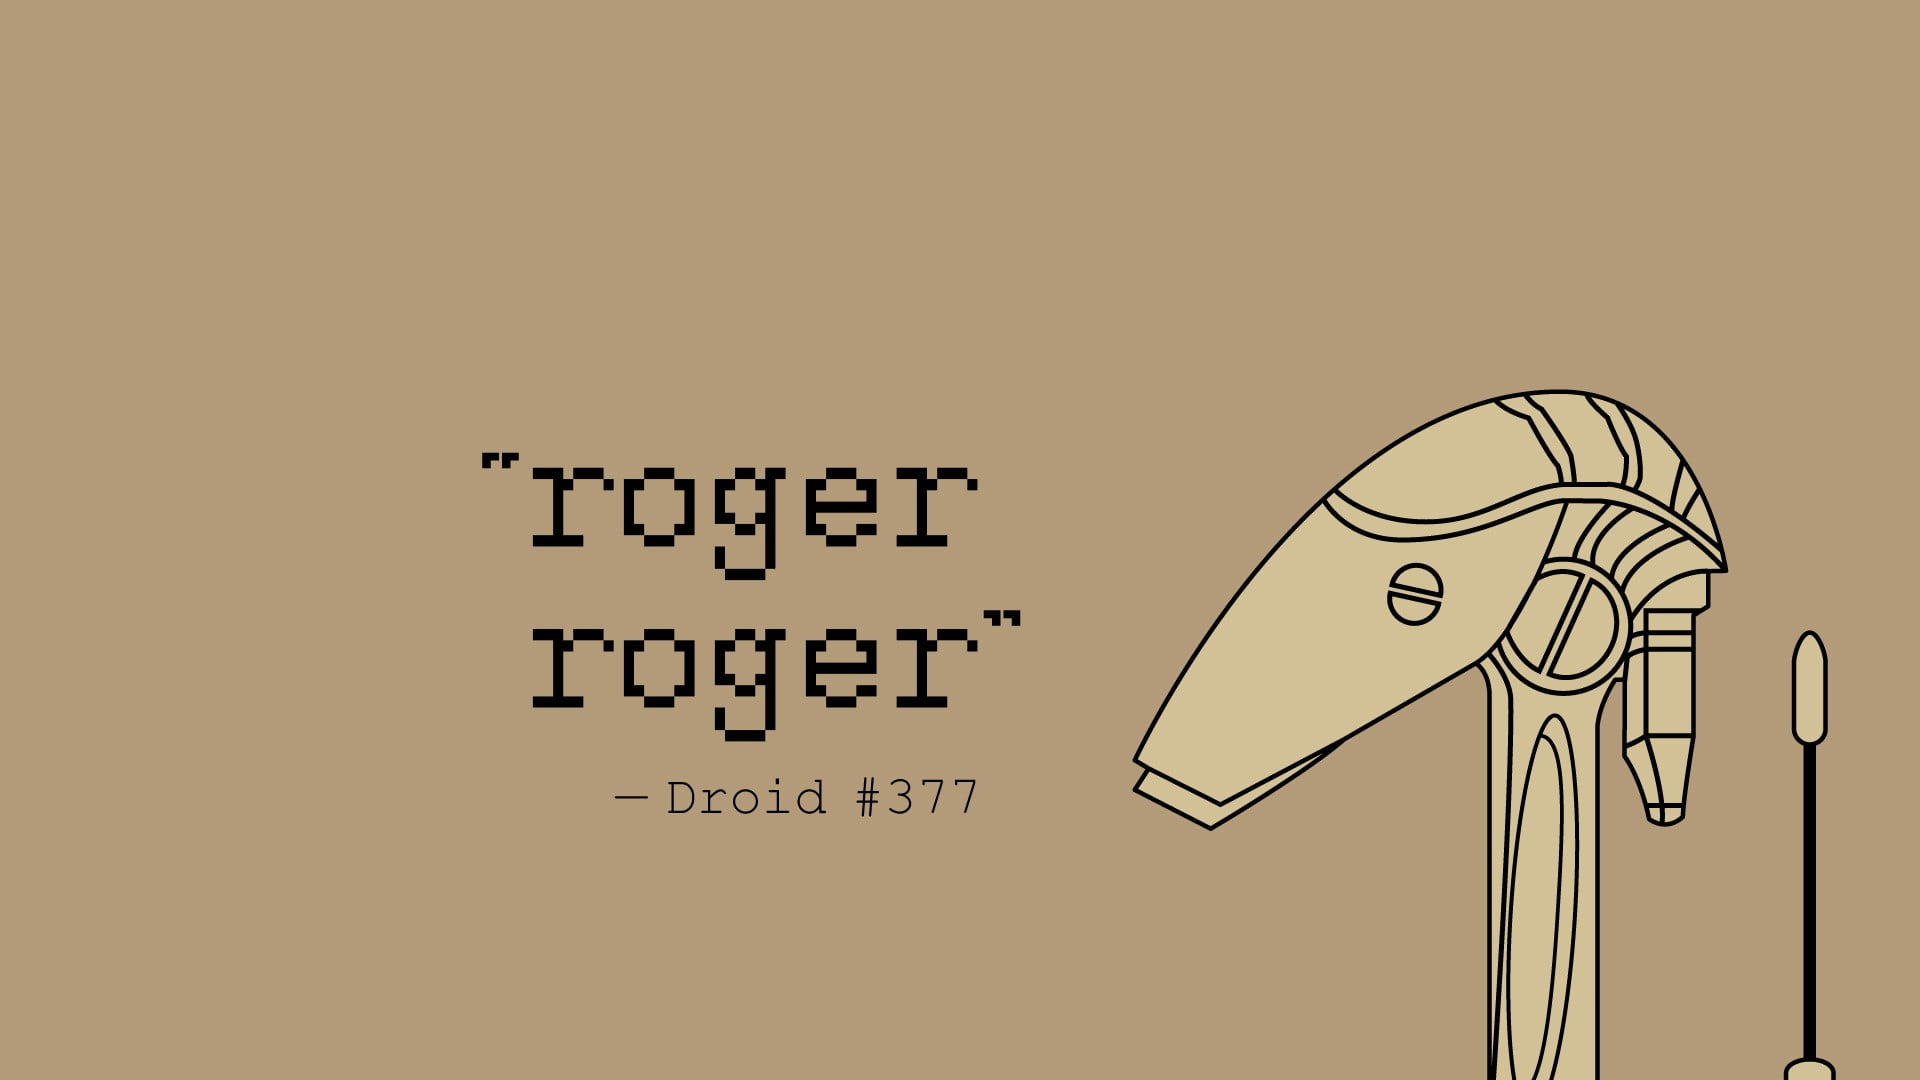 Roger Roger - Droid #377 digital wallpaper, Star Wars, robot, simple backgr...